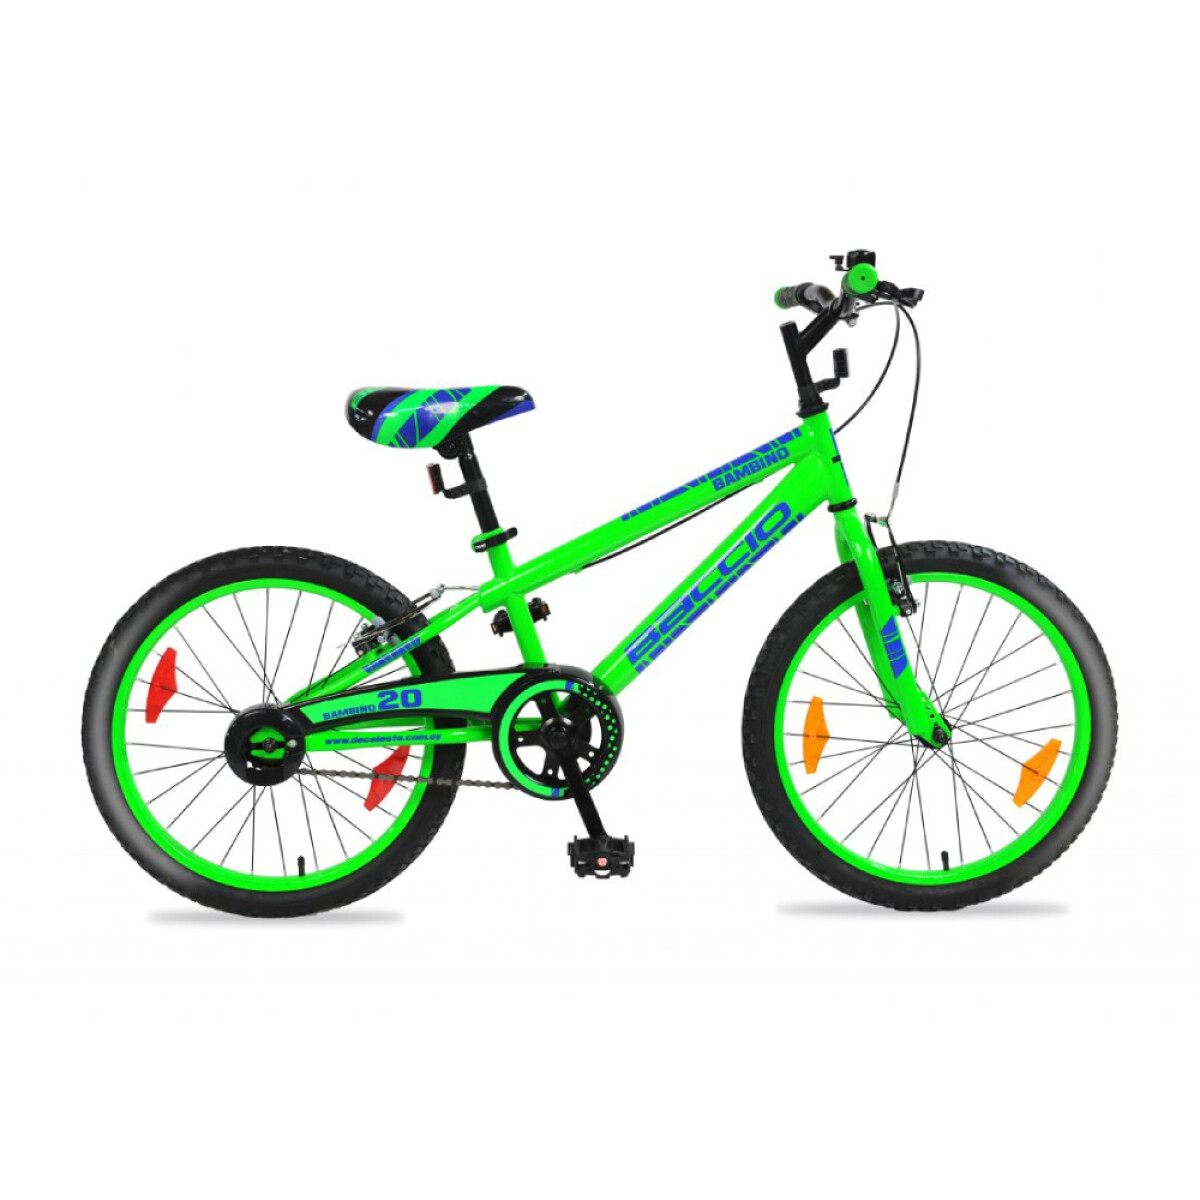 Bicicleta Baccio Bambino rodado 20 - Verde 